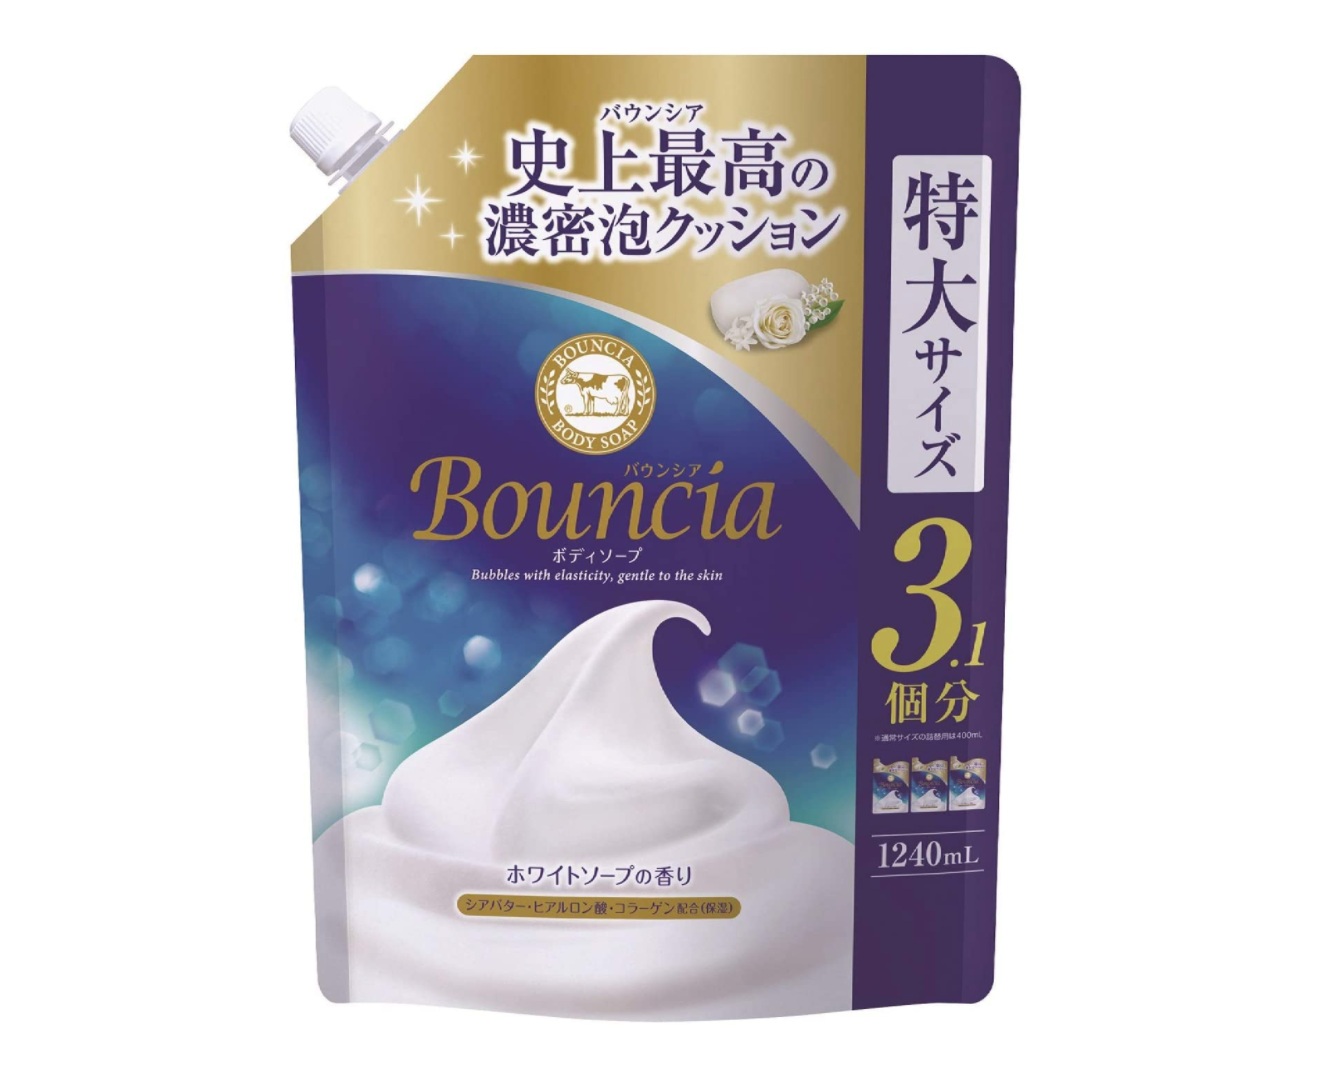 Sữa tắm Bouncia dạng túi